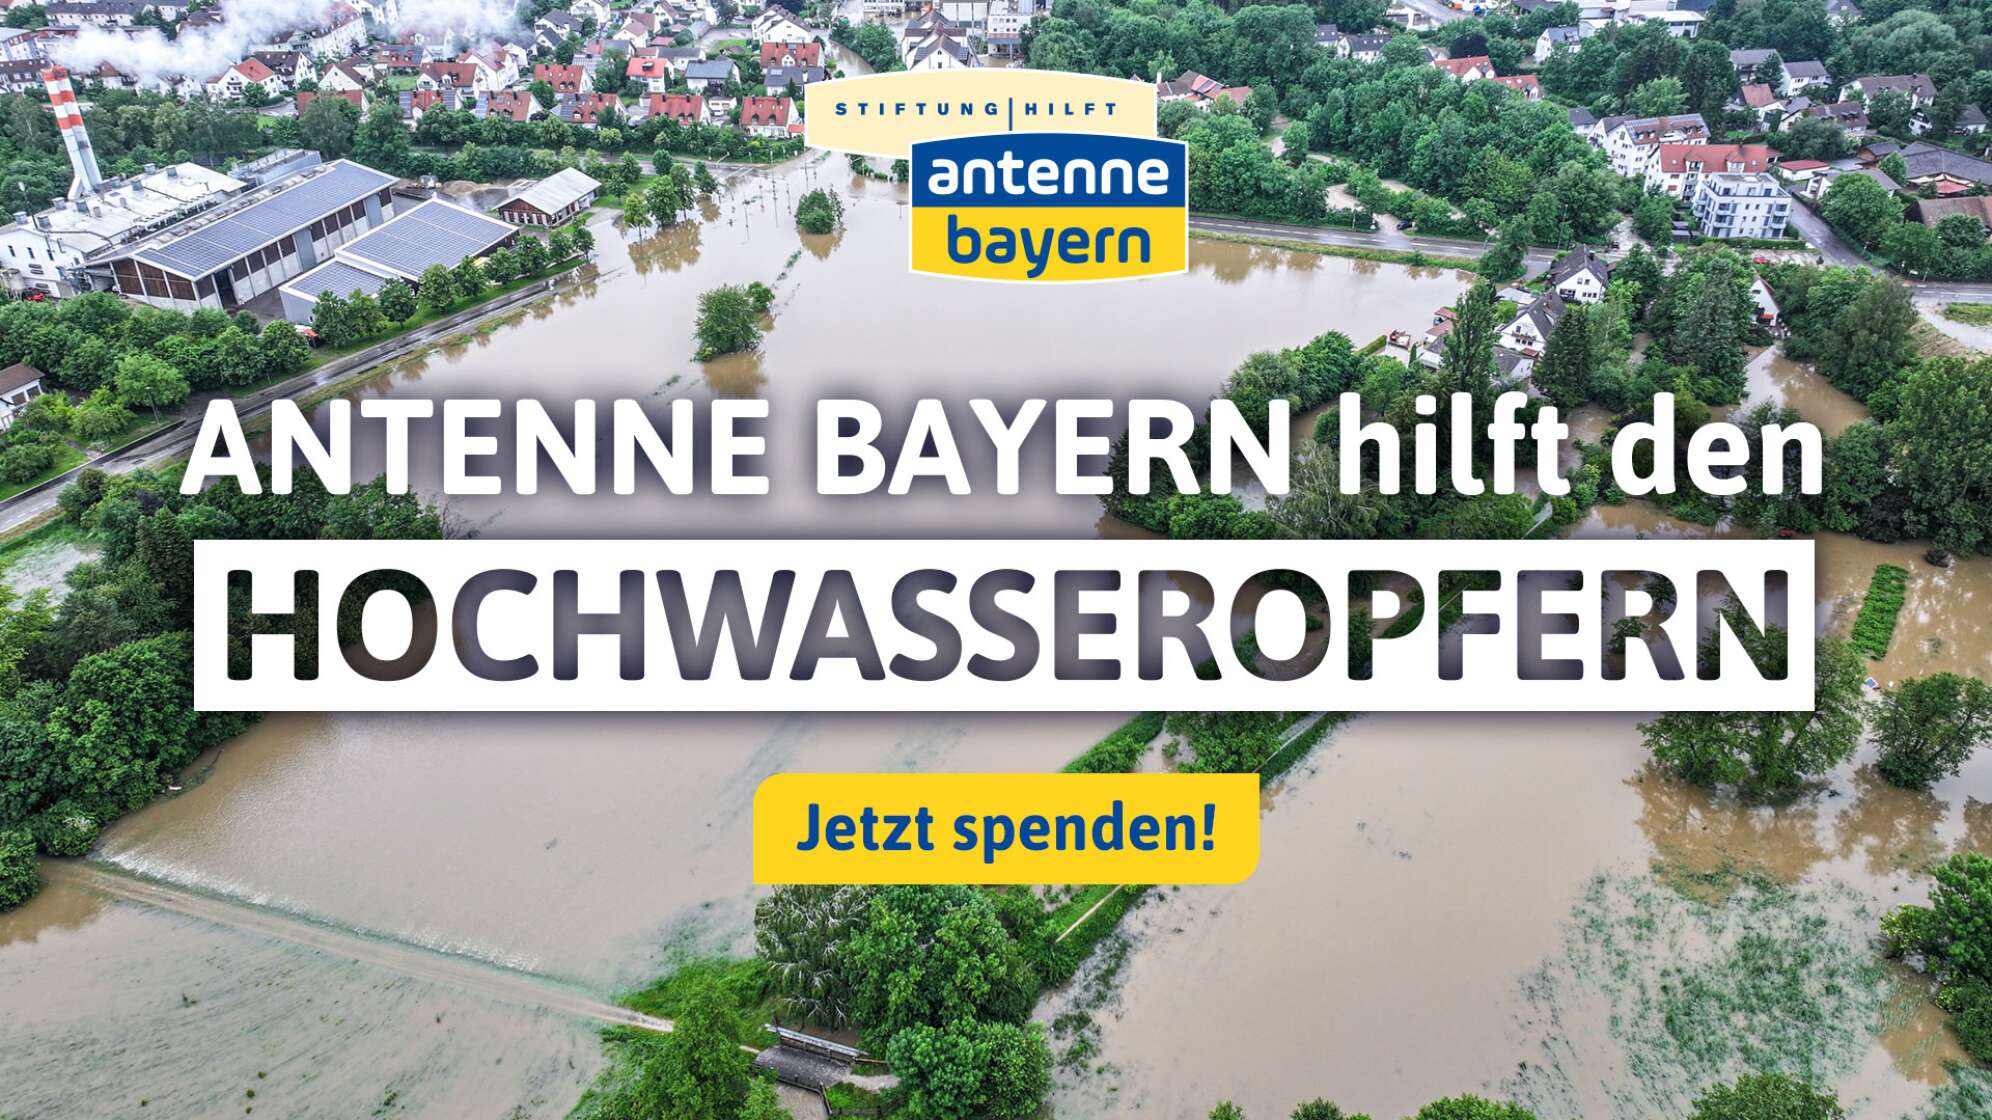 Bayern helfen Bayern: ANTENNE BAYERN hilft den Hochwasseropfern